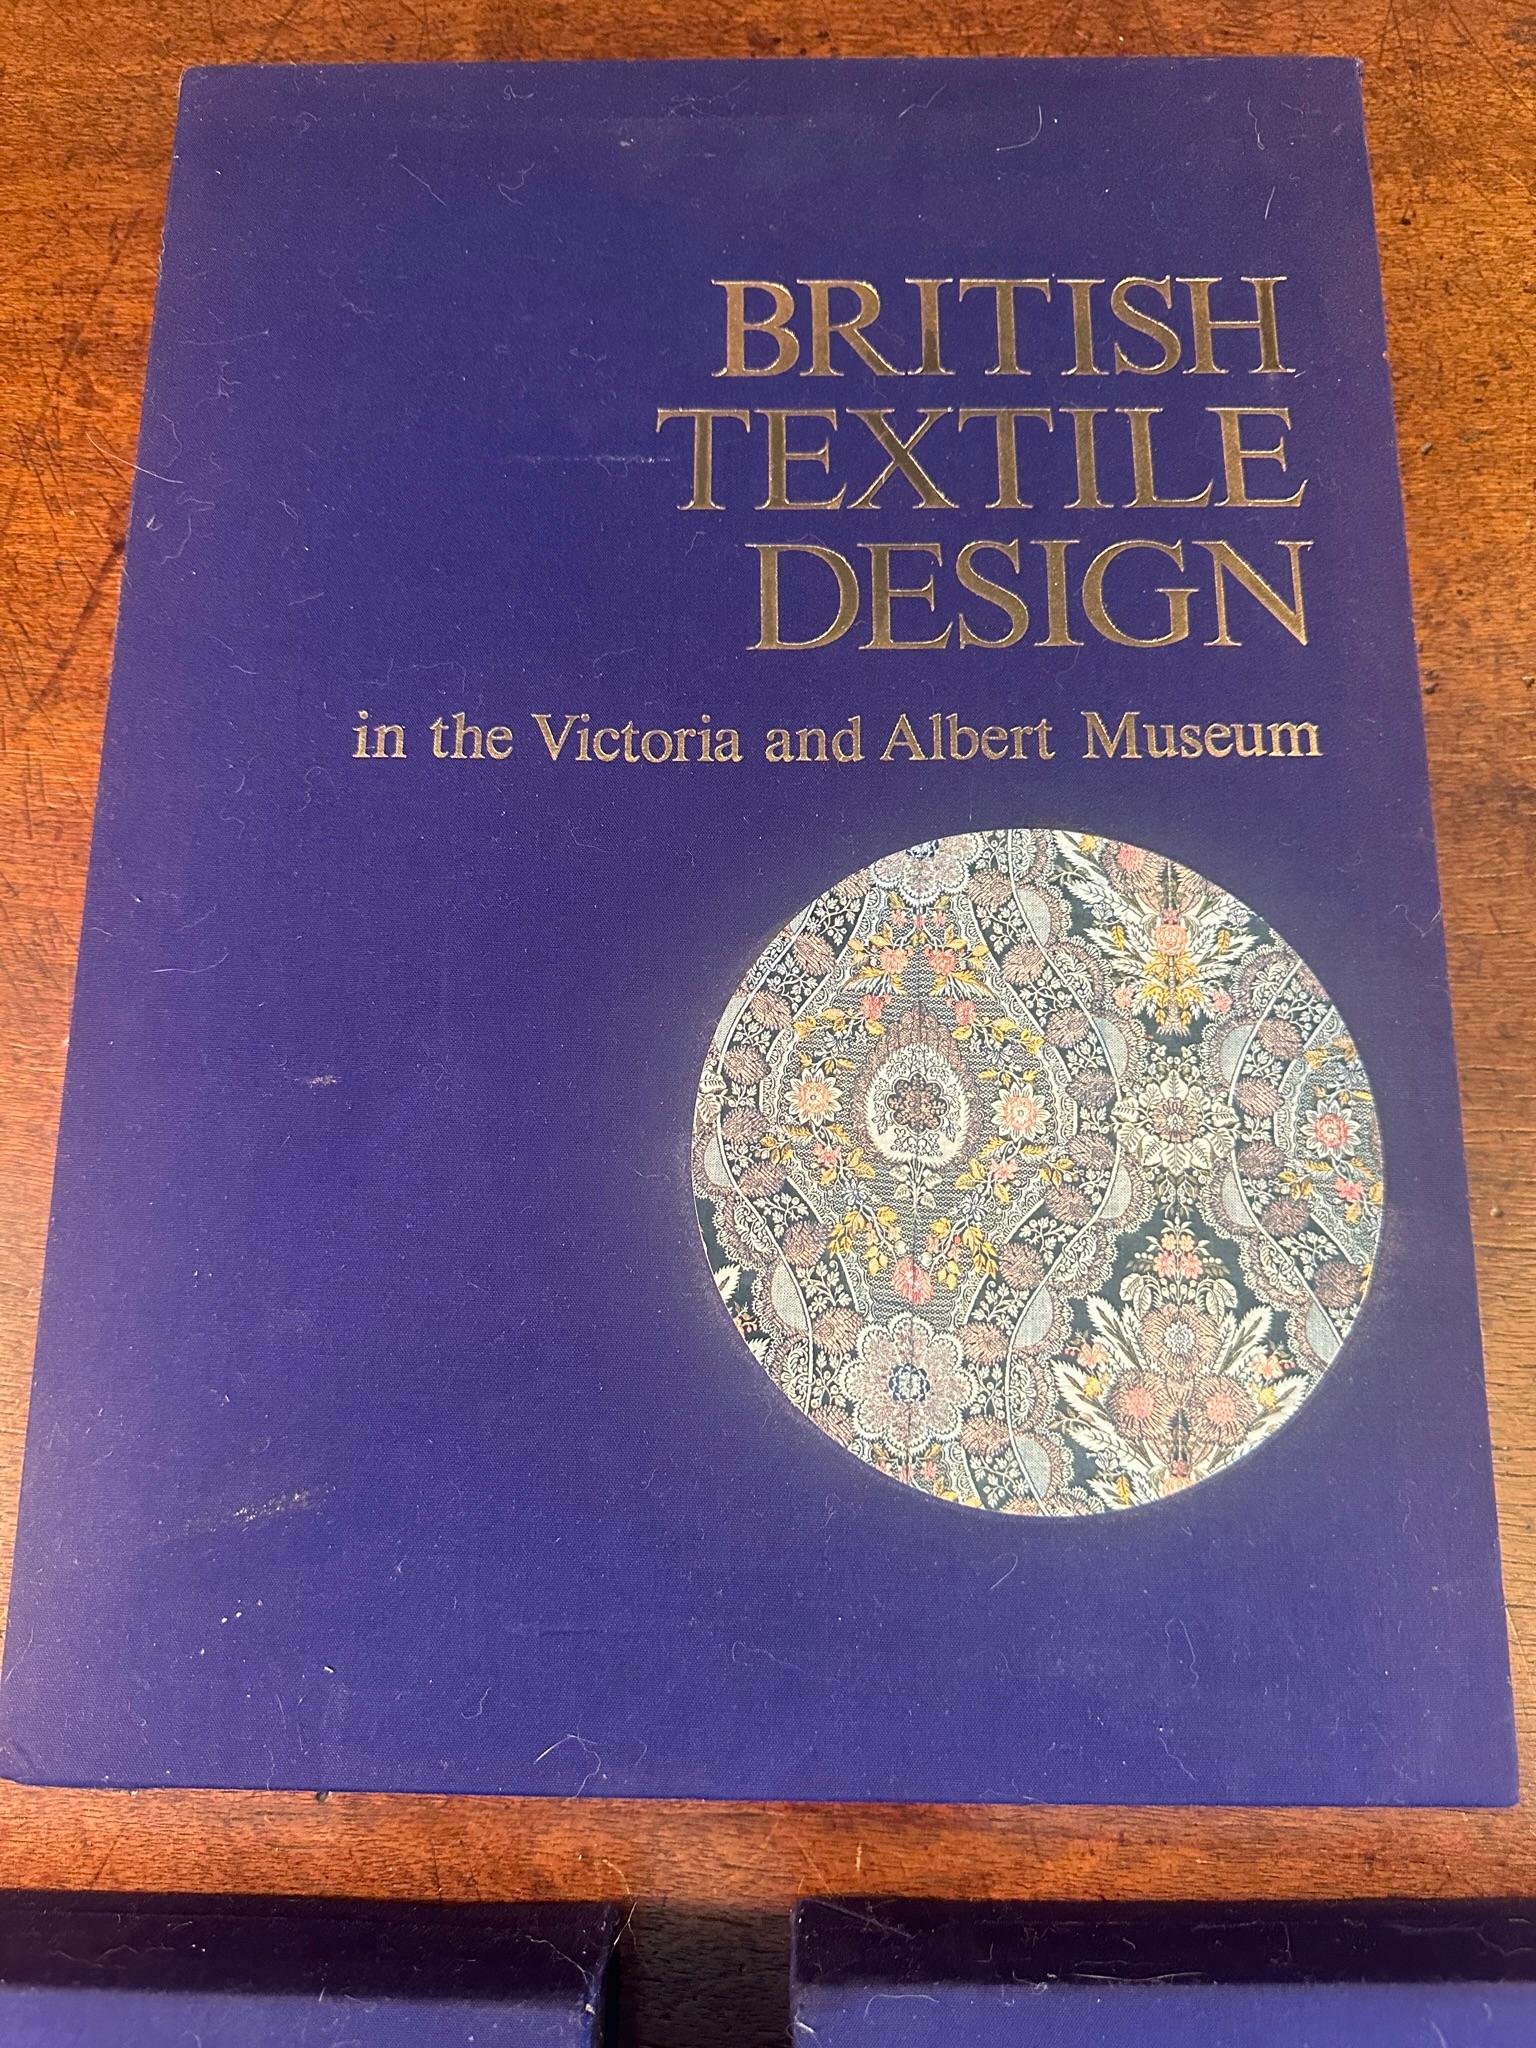 book folio design